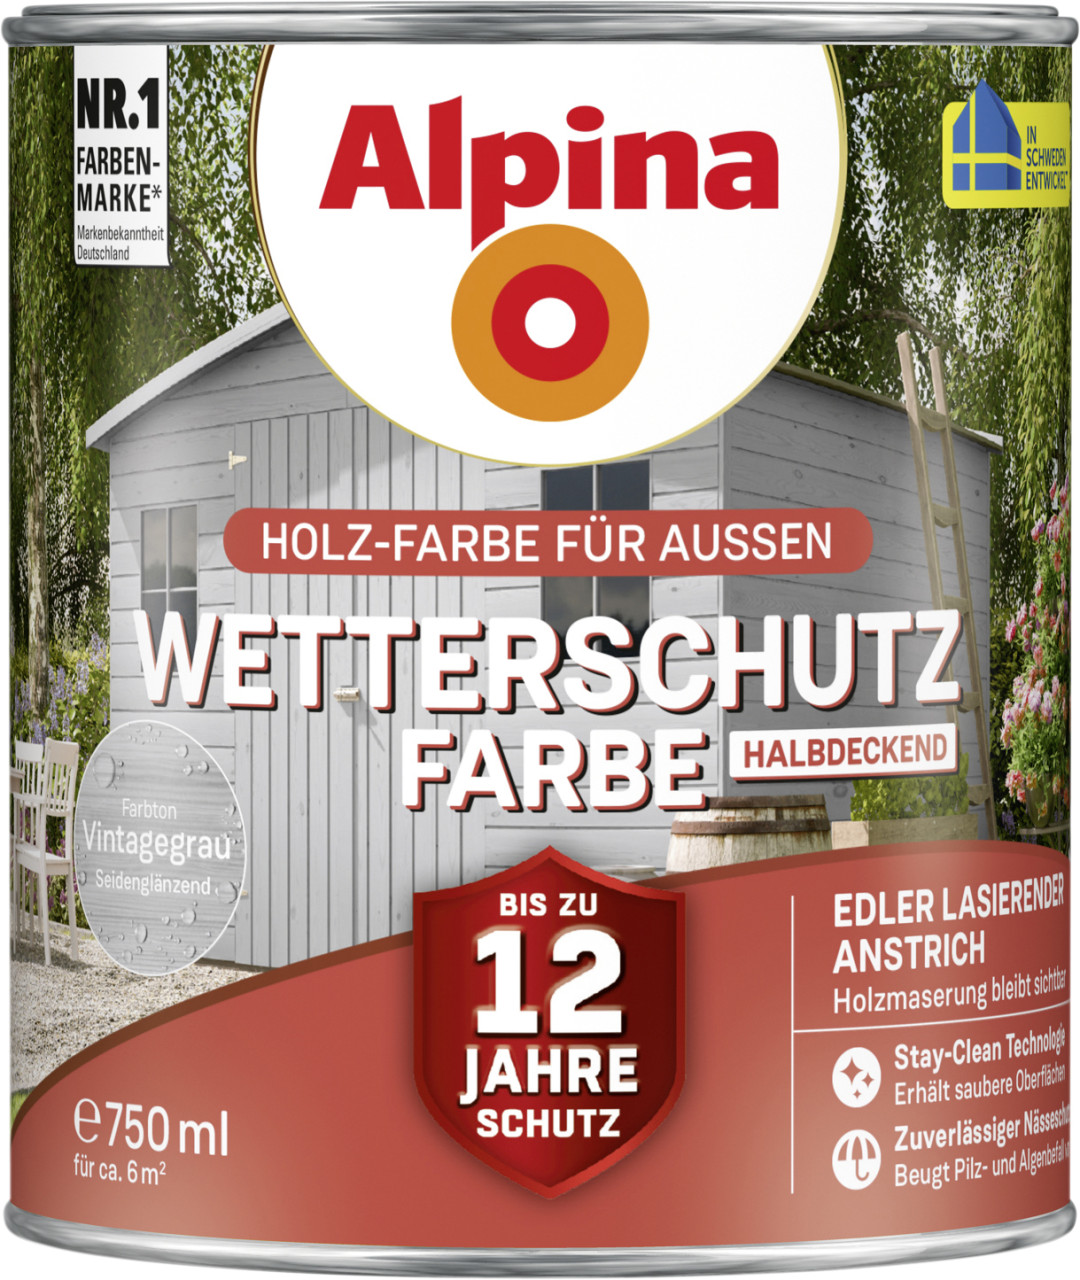 Alpina Wetterschutzfarbe halbdeckend 0,75 L vintagegrau von Alpina